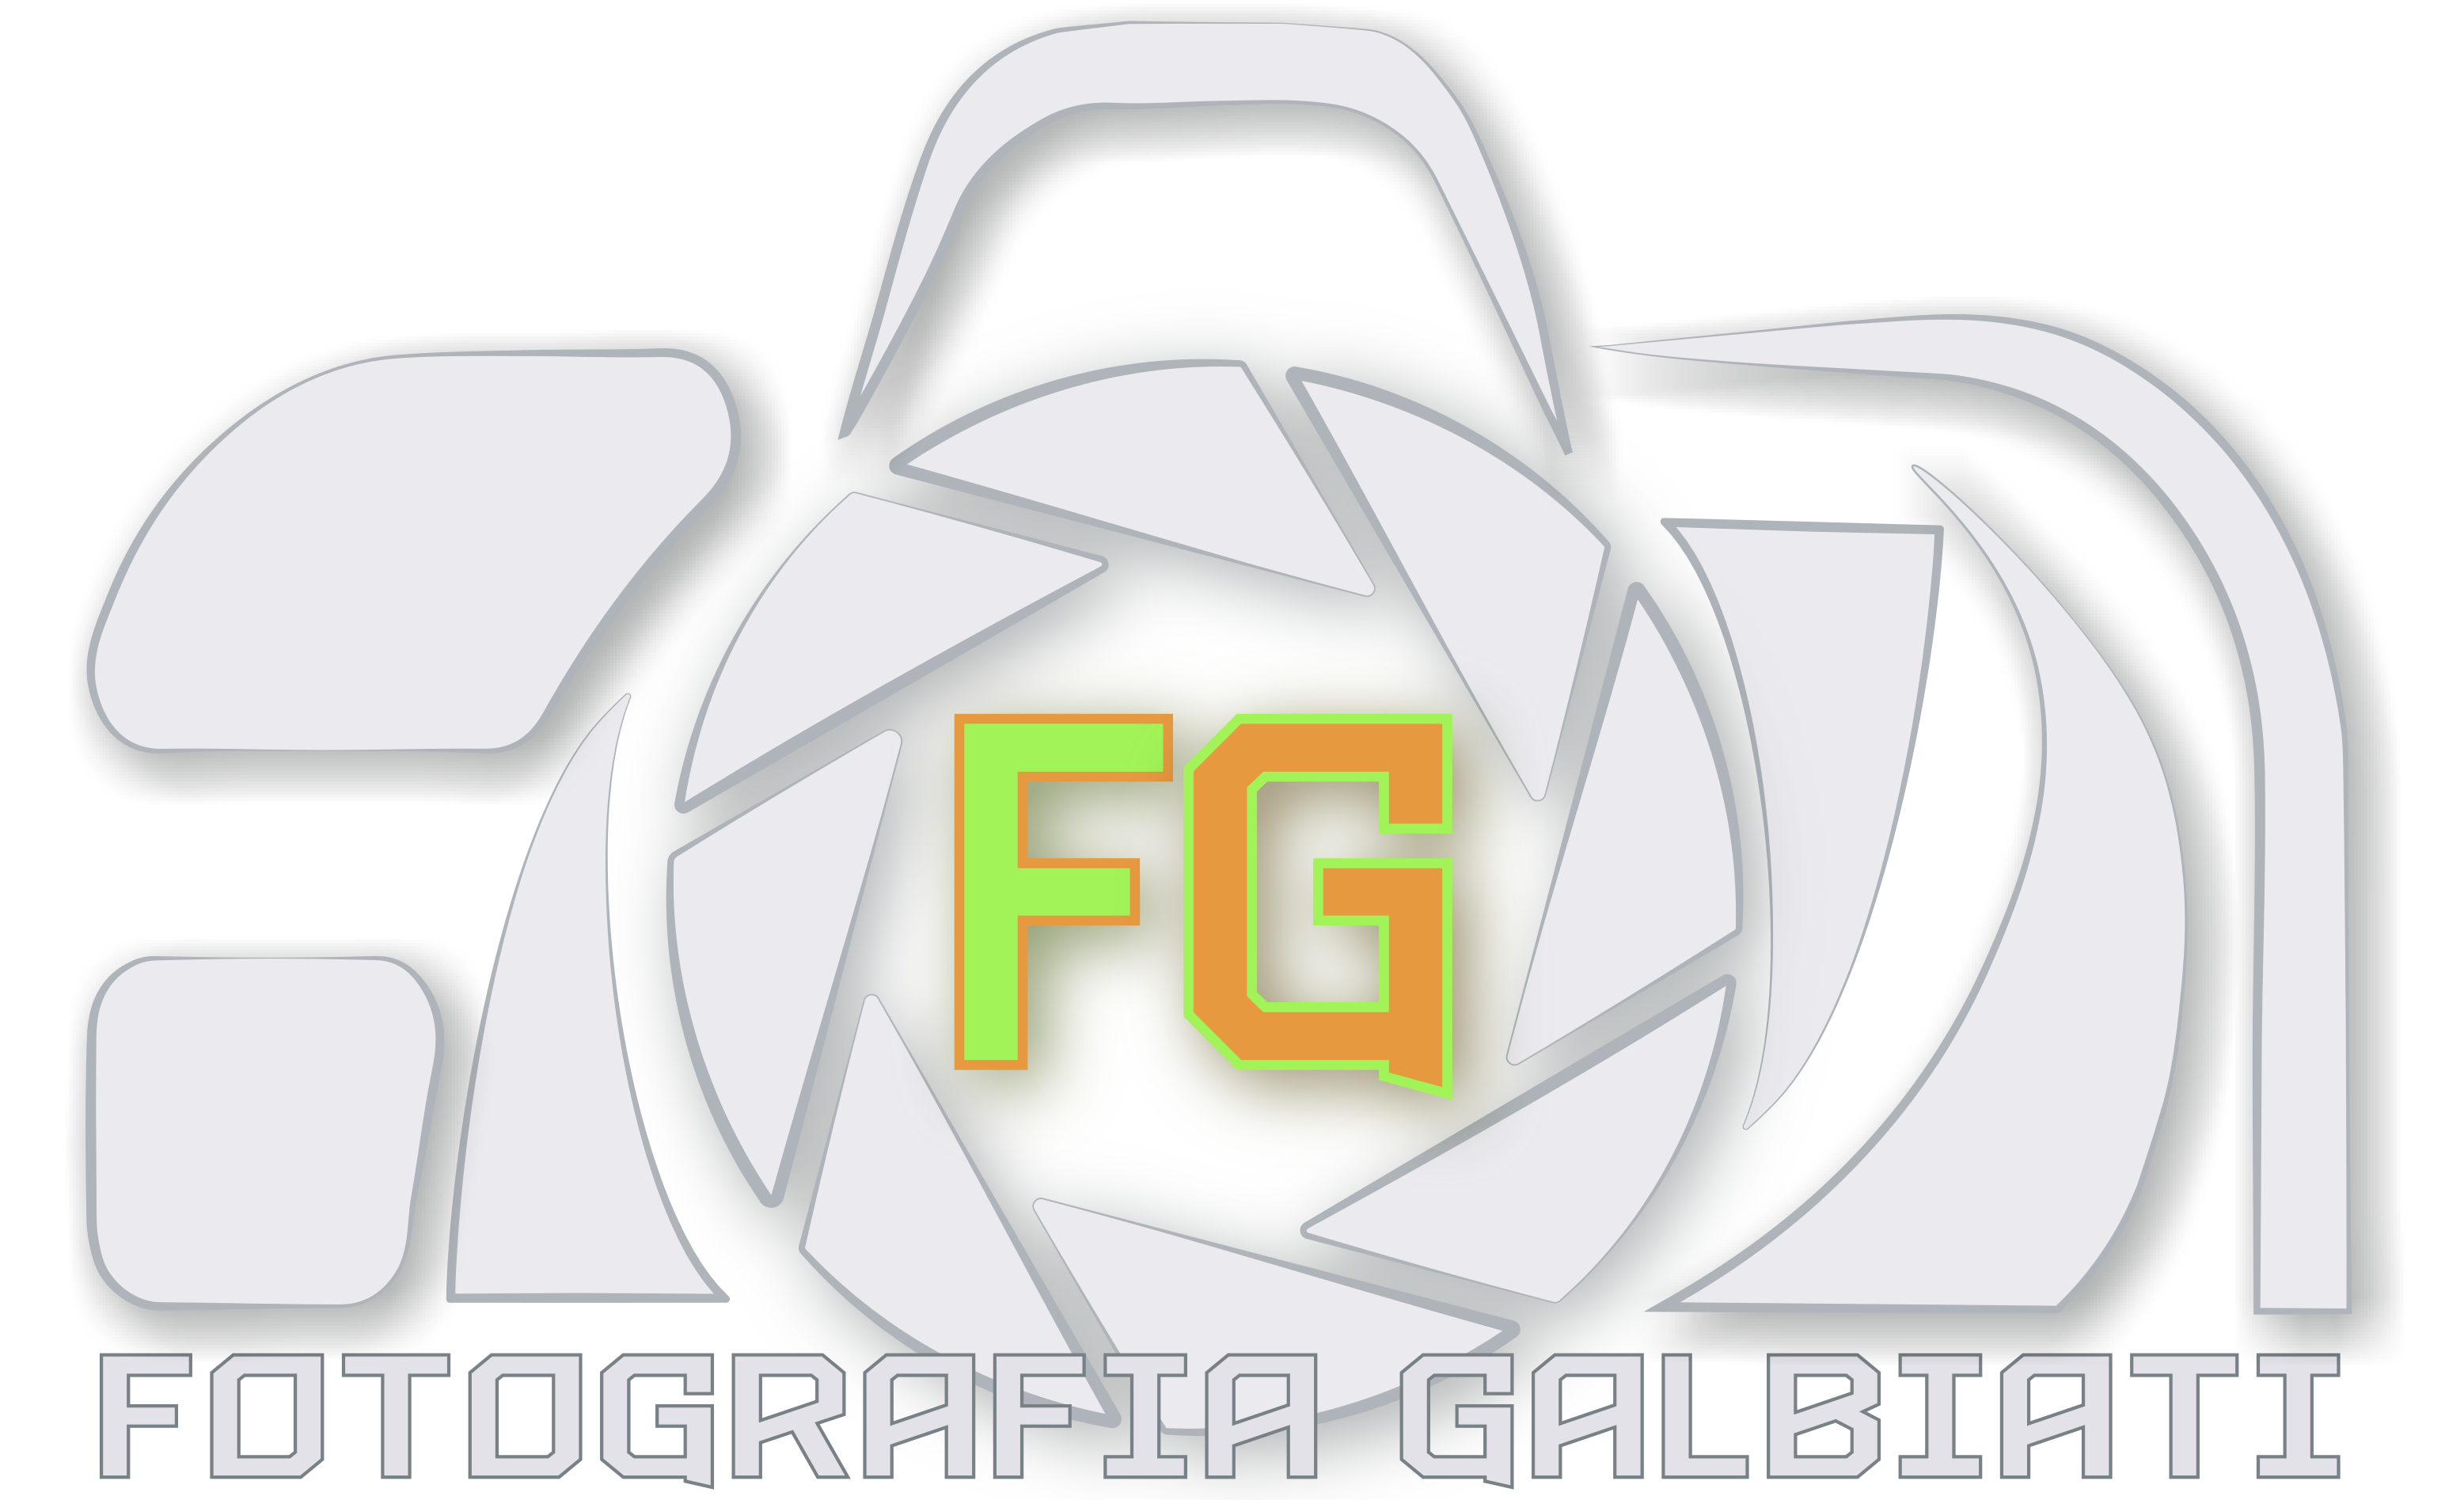 Logo Fotografia Galbiati Versione 2014